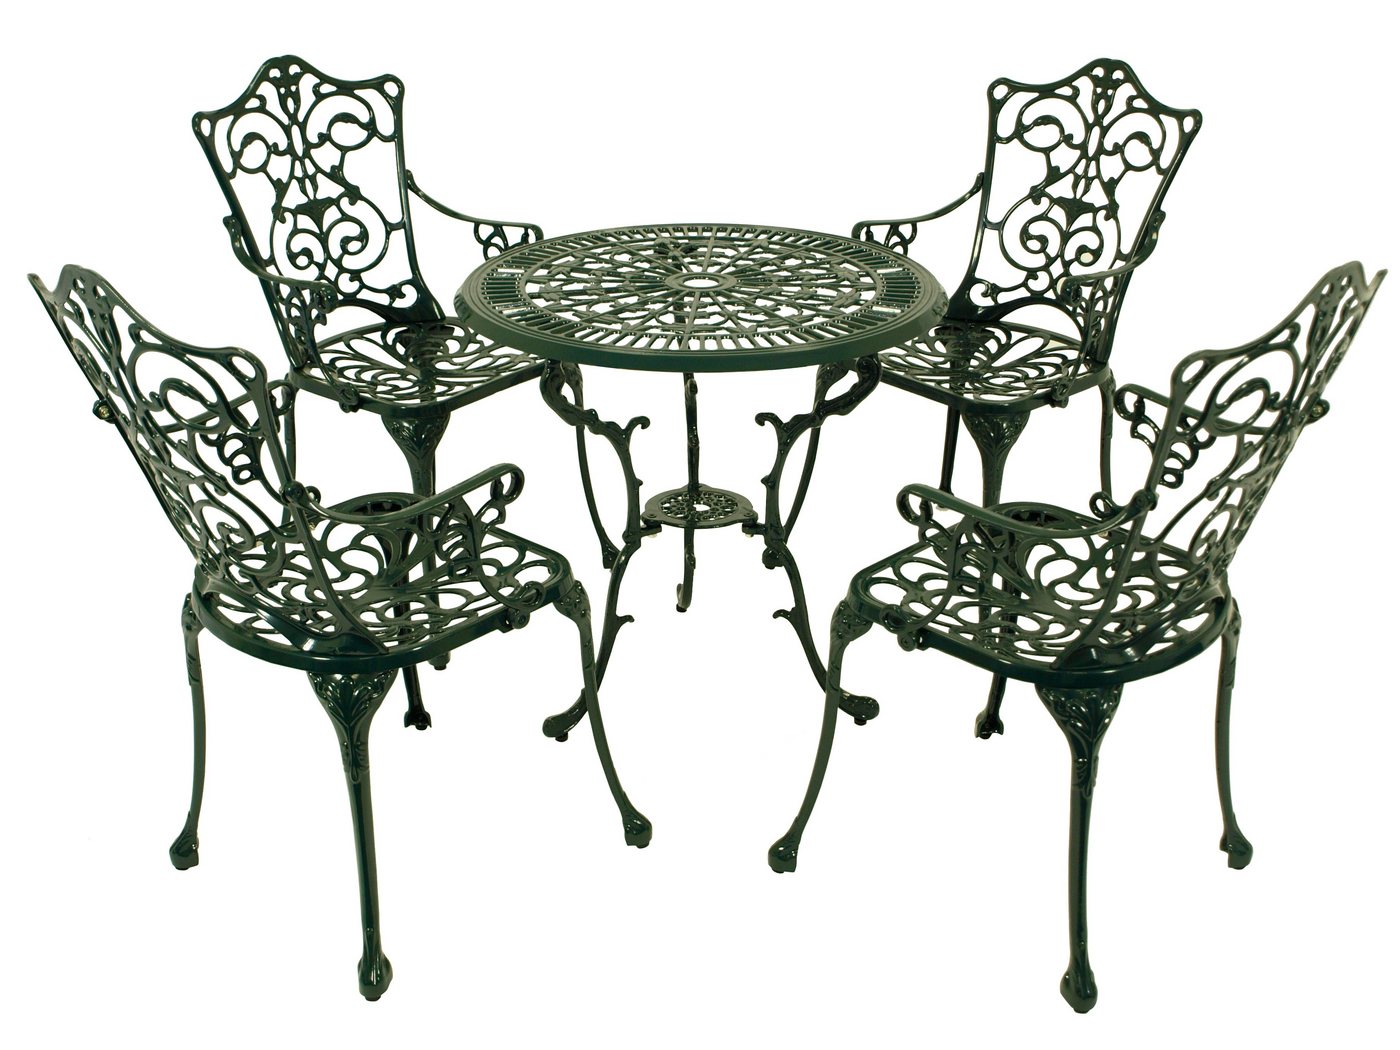 DEGAMO Garten-Essgruppe Jugendstil, (5-tlg), (4x Sessel, 1x Tisch 70cm rund), Aluguss rostfrei, Farbe dunkelgrün von DEGAMO